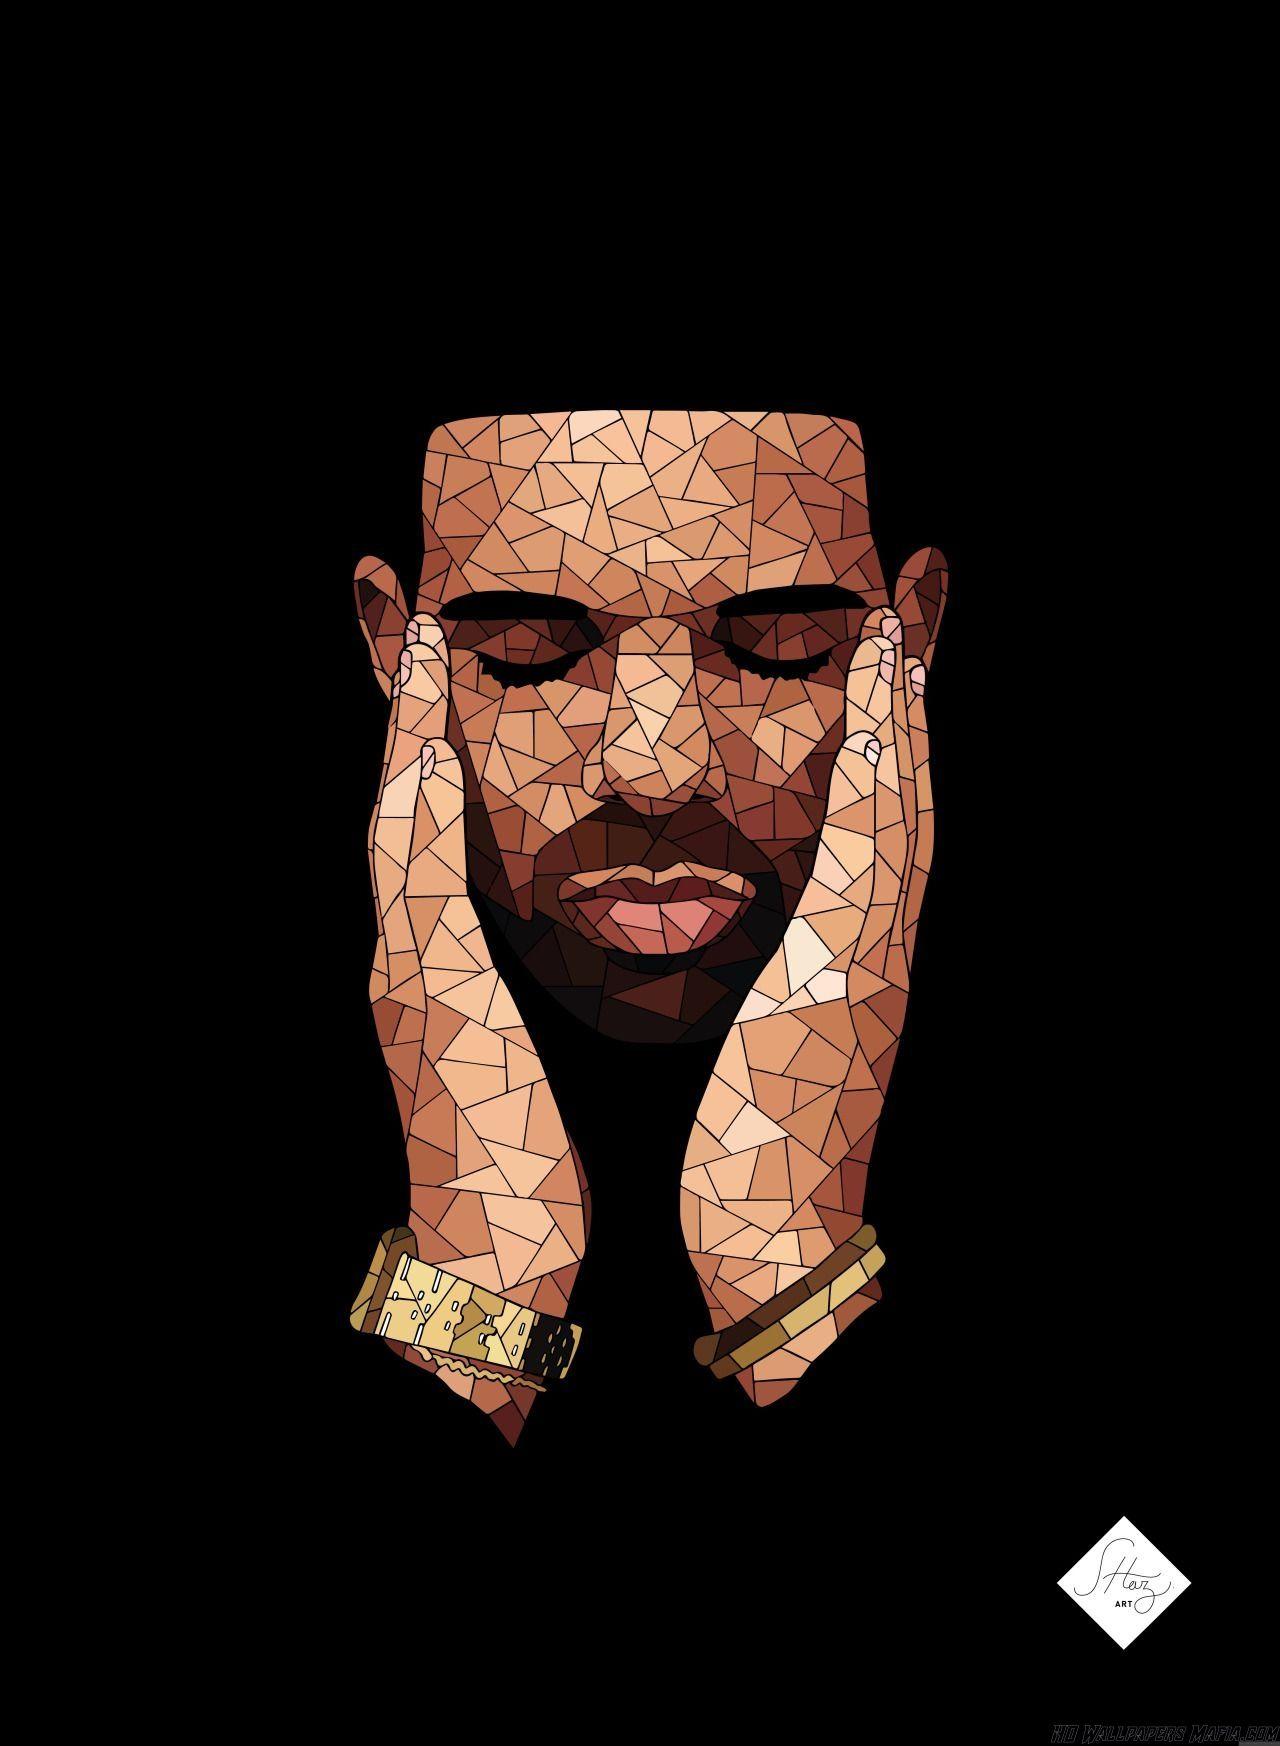 Drake HD Wallpaper 36. Drake wallpaper, Drake art, Drake iphone